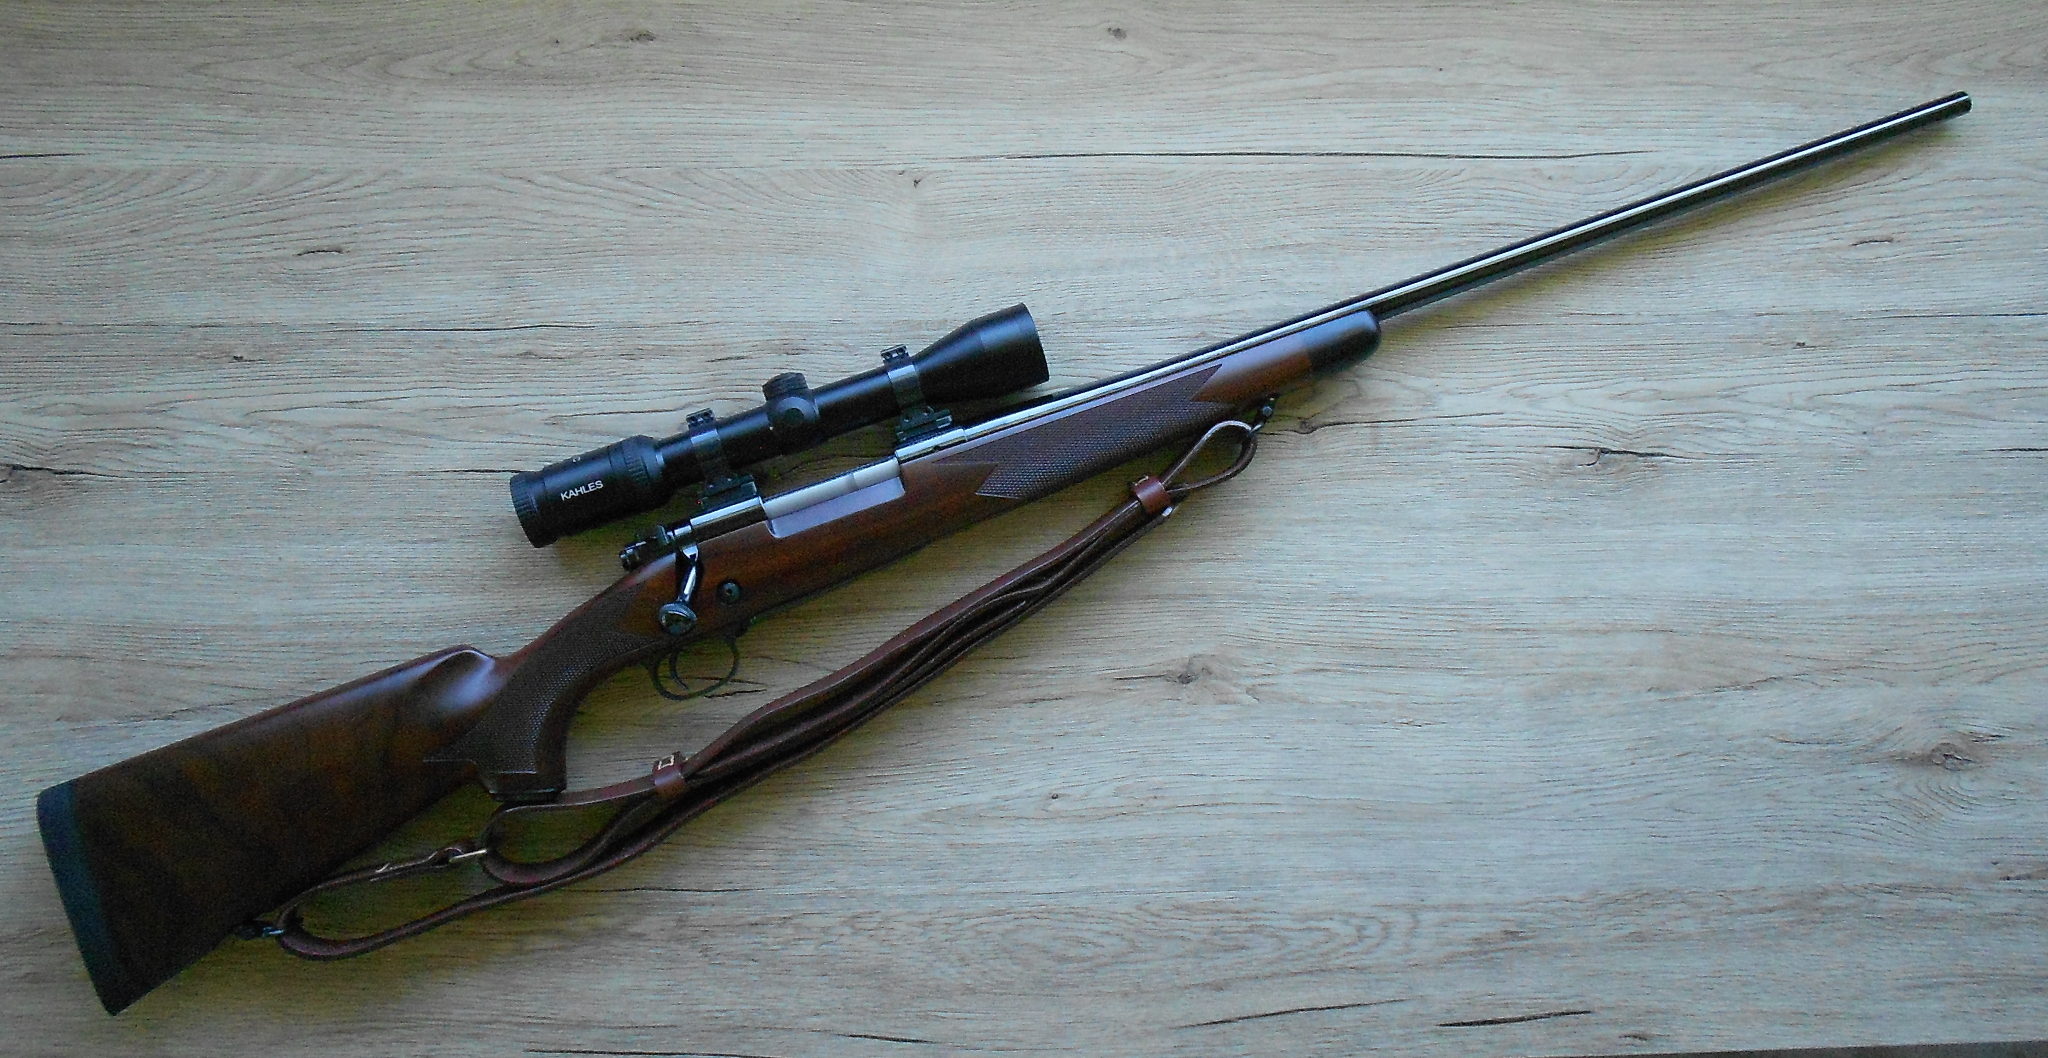 Winchester Model 70 Super Grade rifle